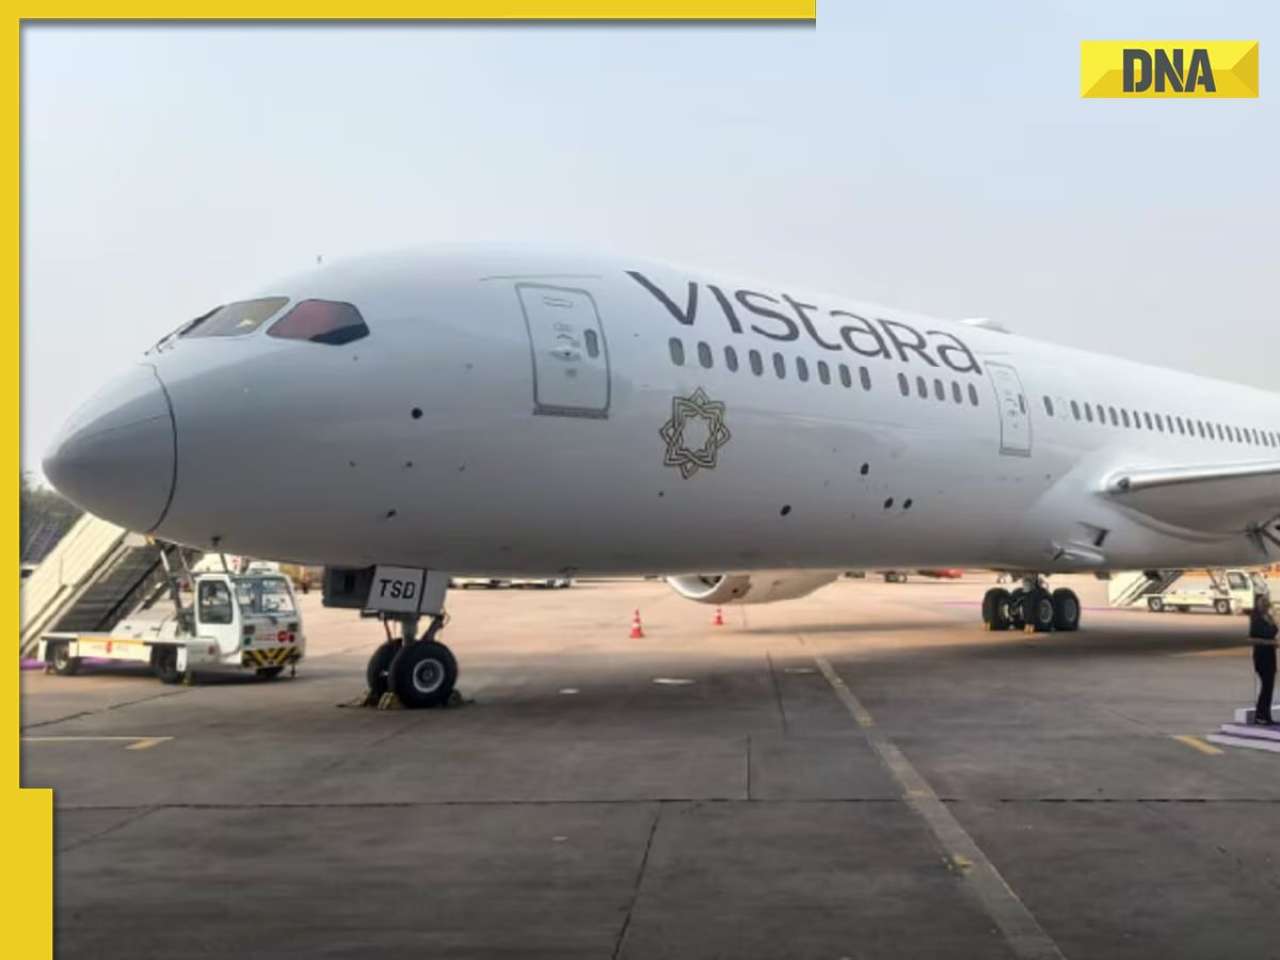 Airfares jump 20-25% amid Vistara crisis on key routes due to high travel demand